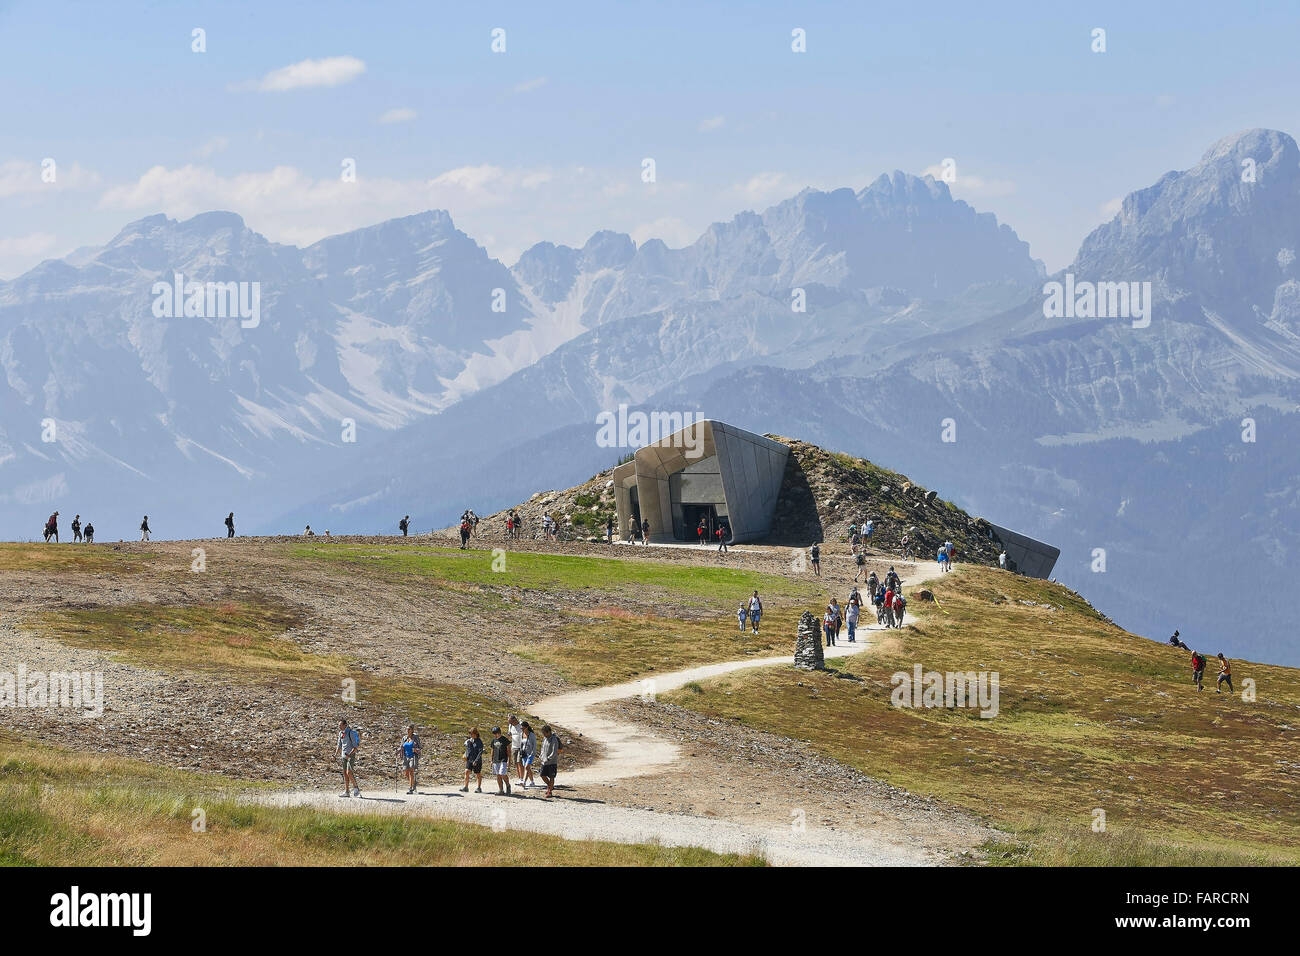 La gamma della montagna, il museo e gli escursionisti. Messner Mountain Museum Corones, Plan de Corones, Italia. Architetto: Zaha Hadid Architects, 2 Foto Stock